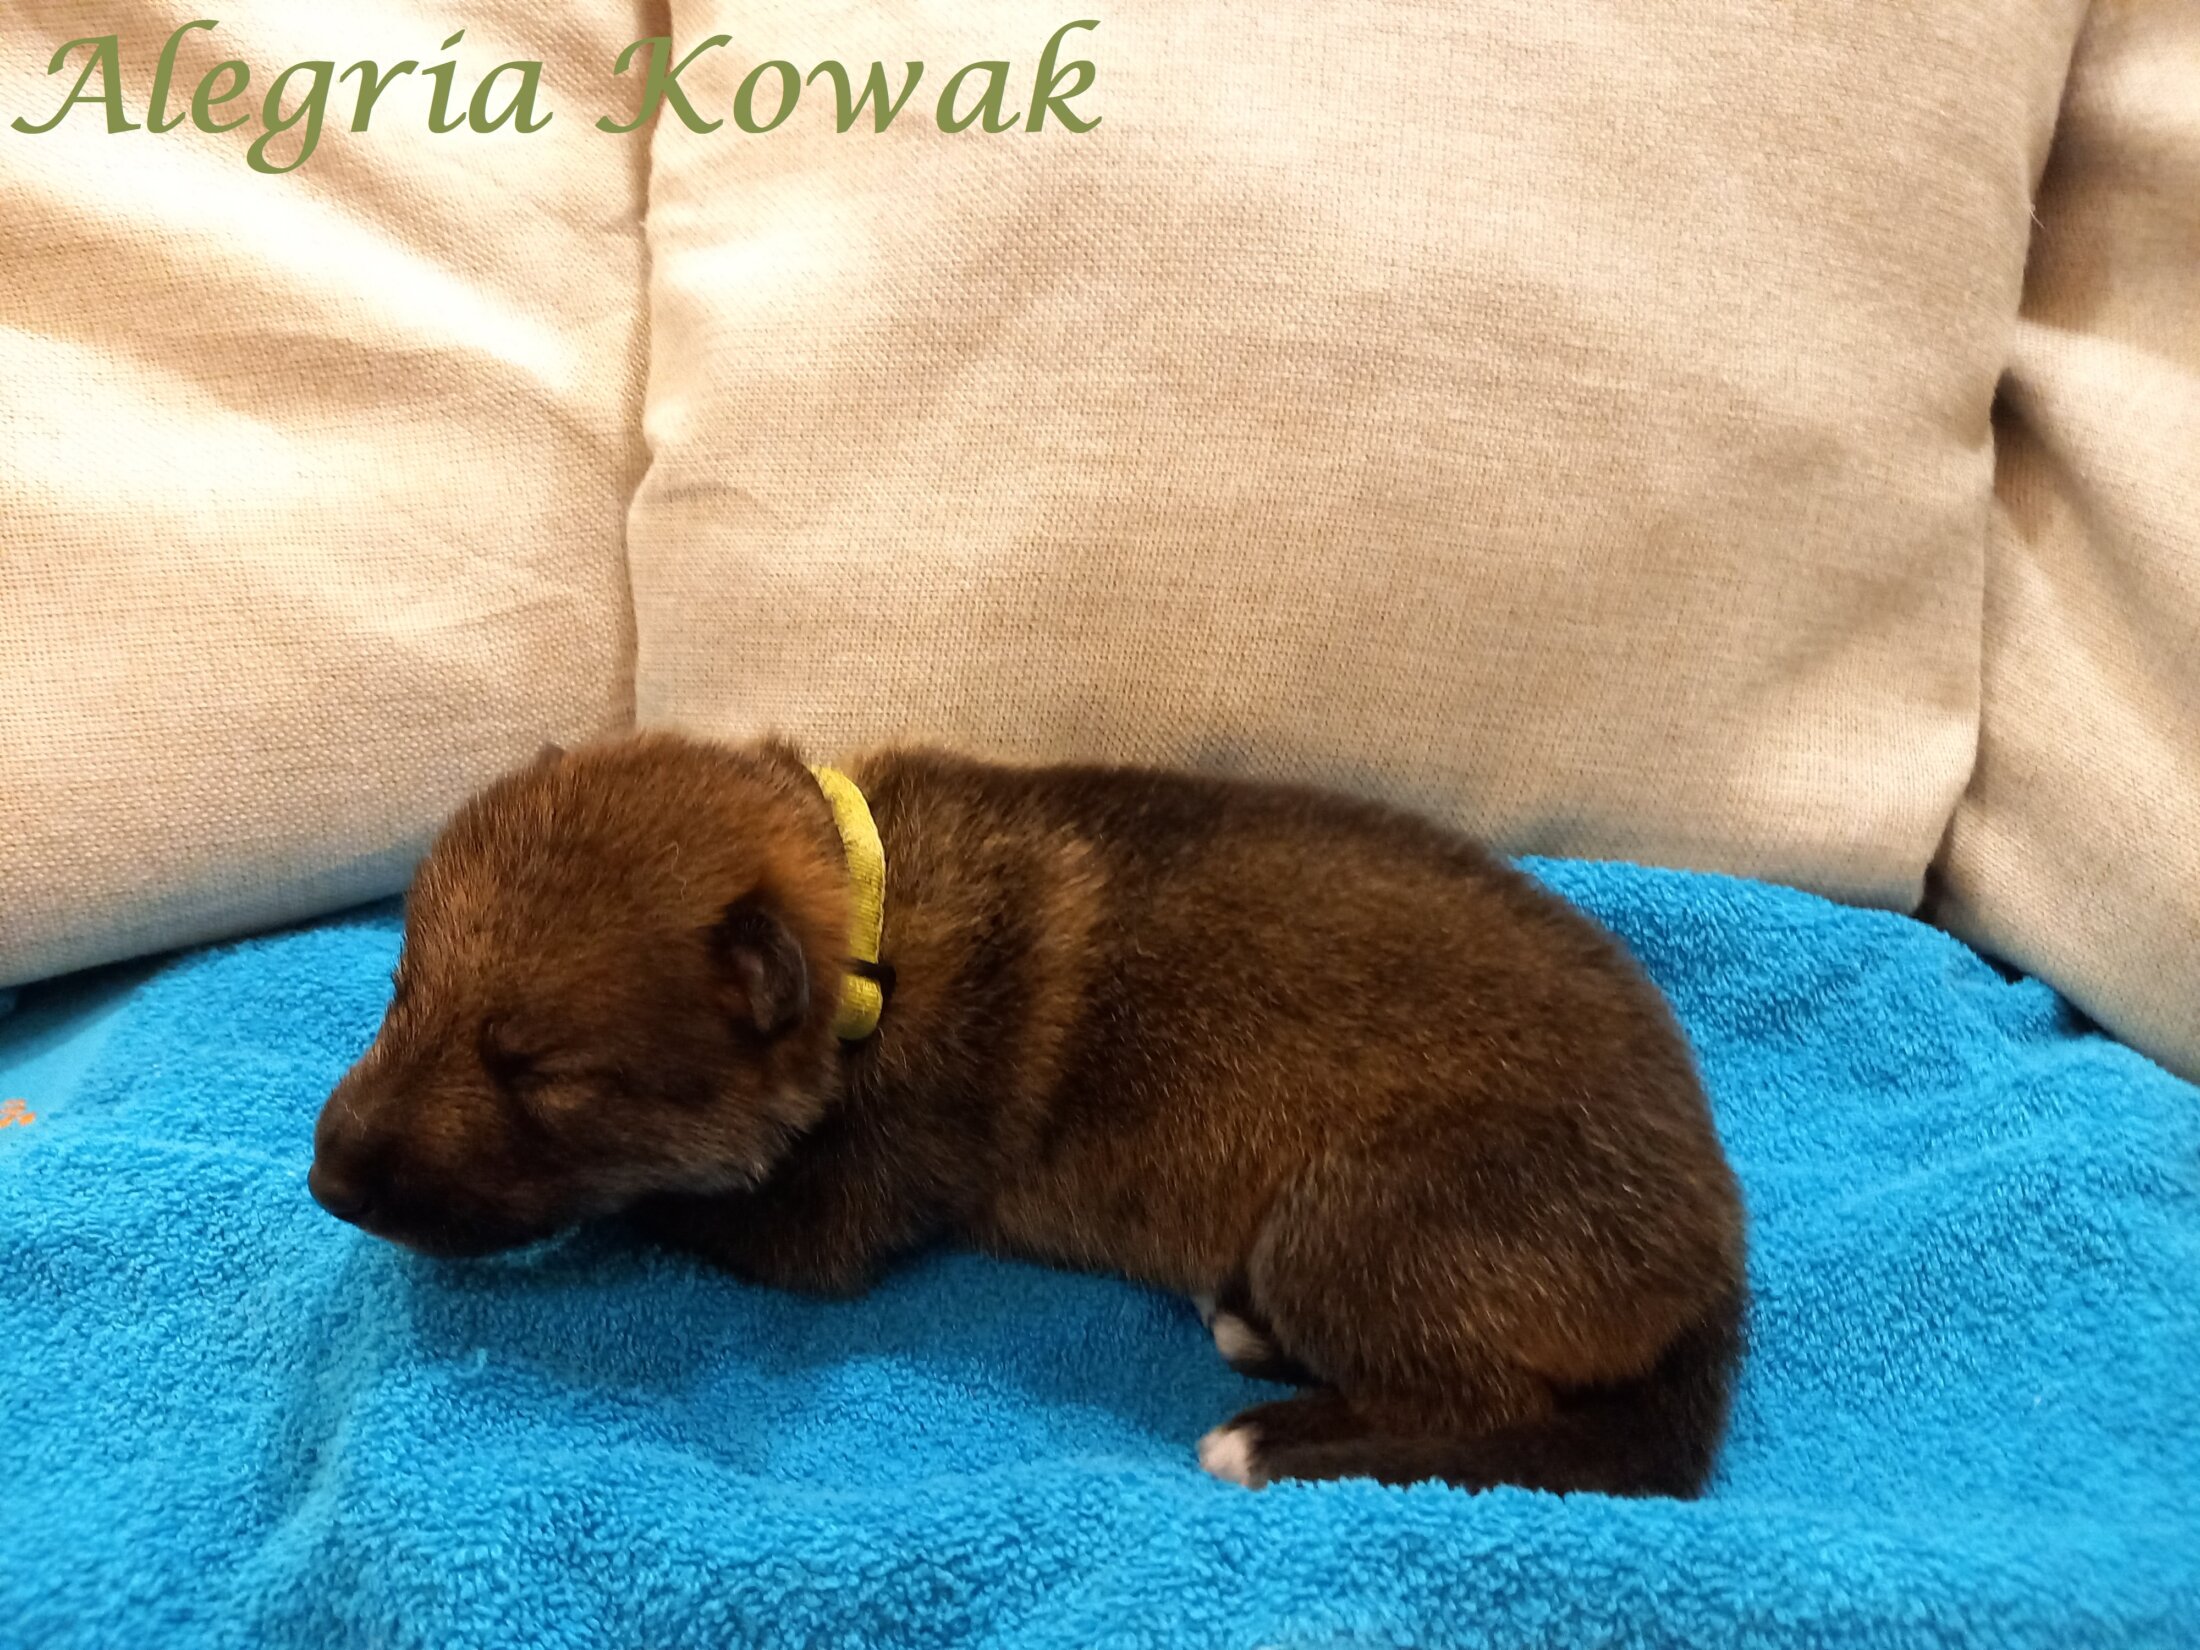 Kowak (1 Week)